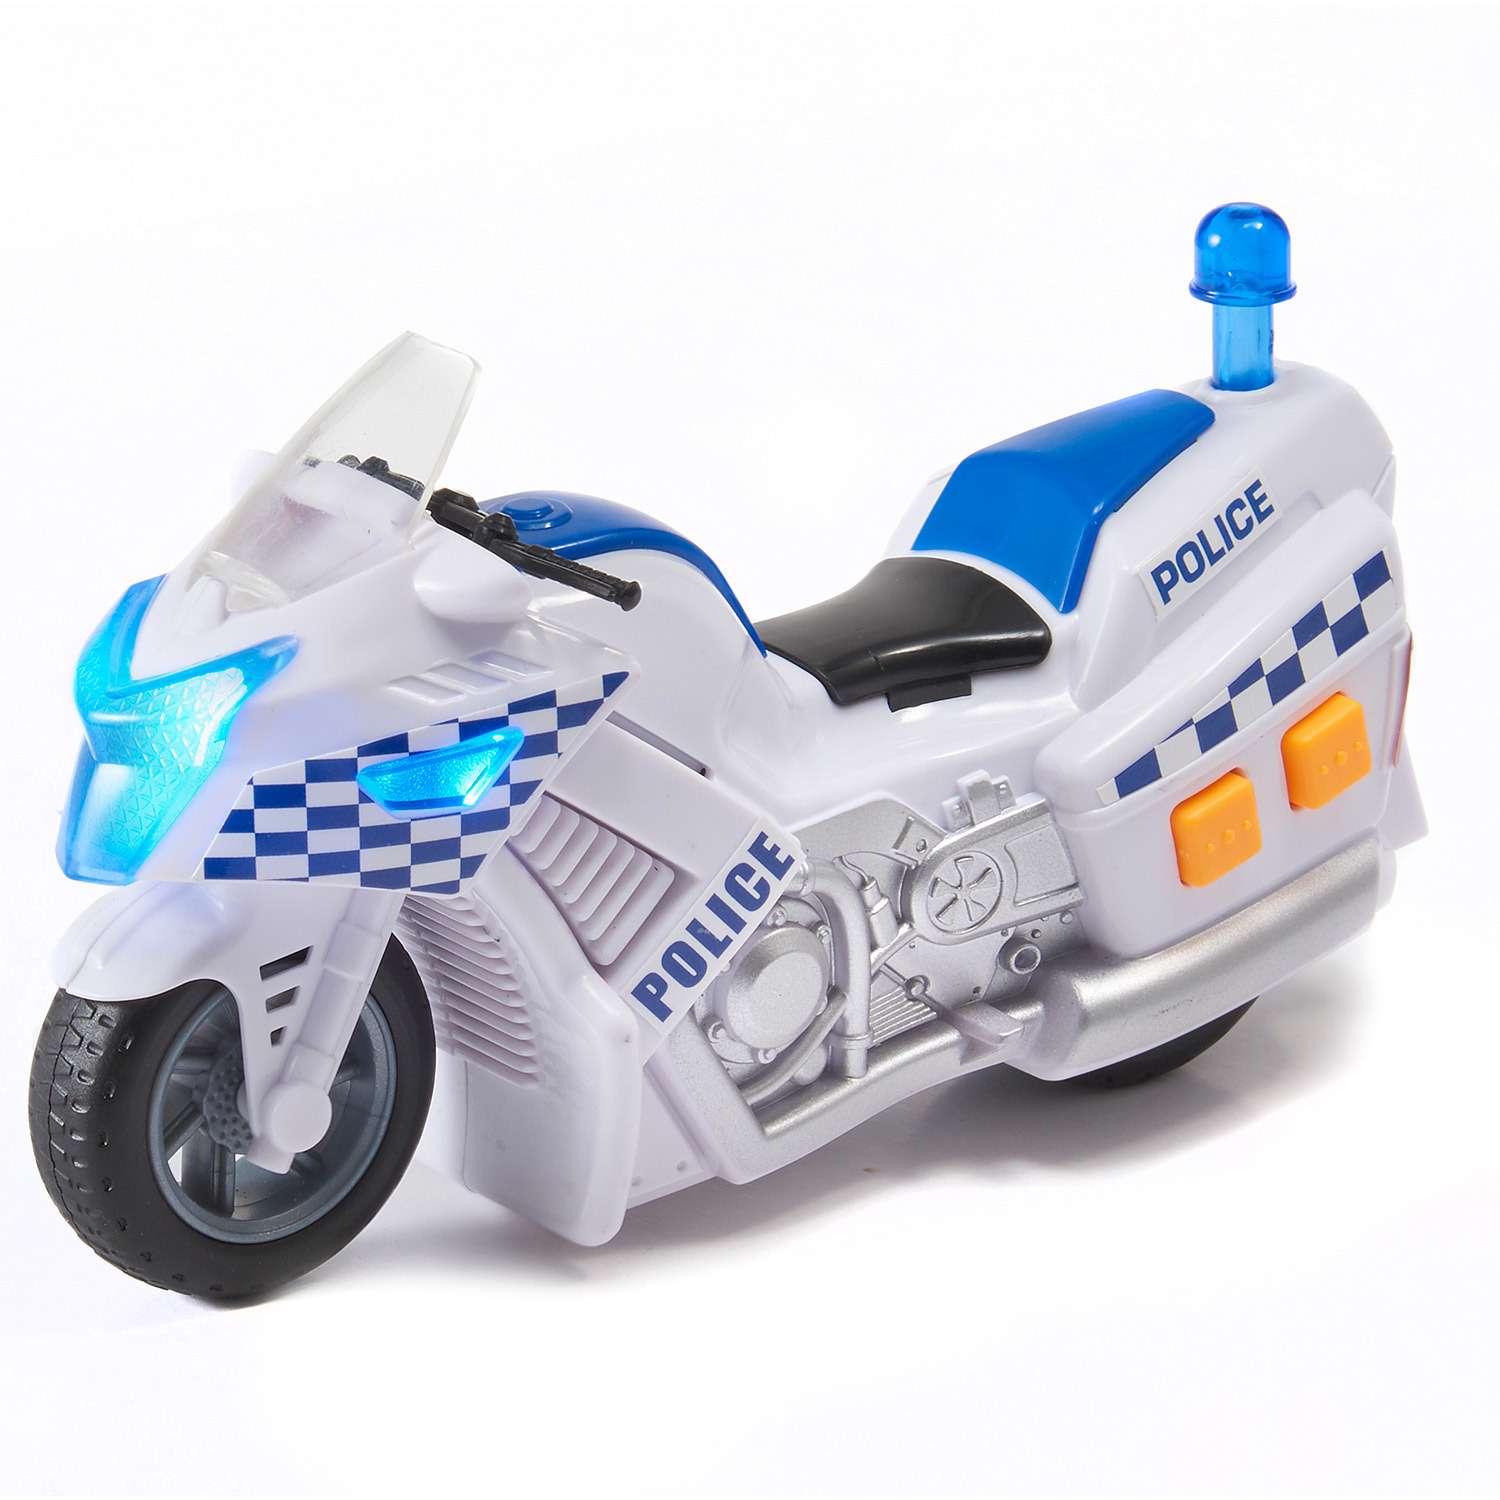 Мини мотоцикл HTI (Roadsterz) полицейский 1416563 1416563 - фото 1